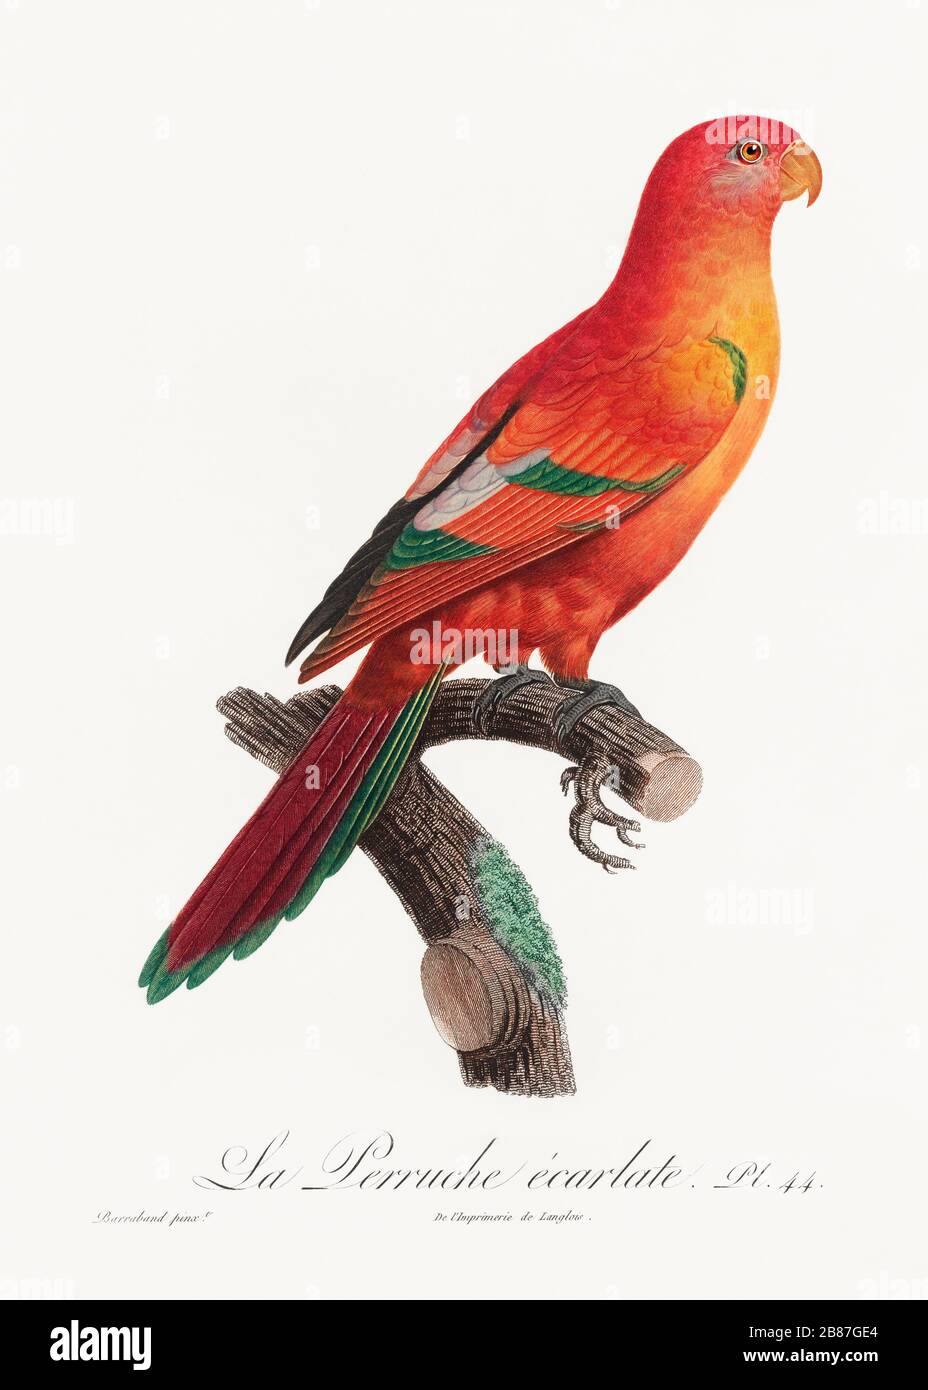 Share 155+ parrot wallpaper hd best